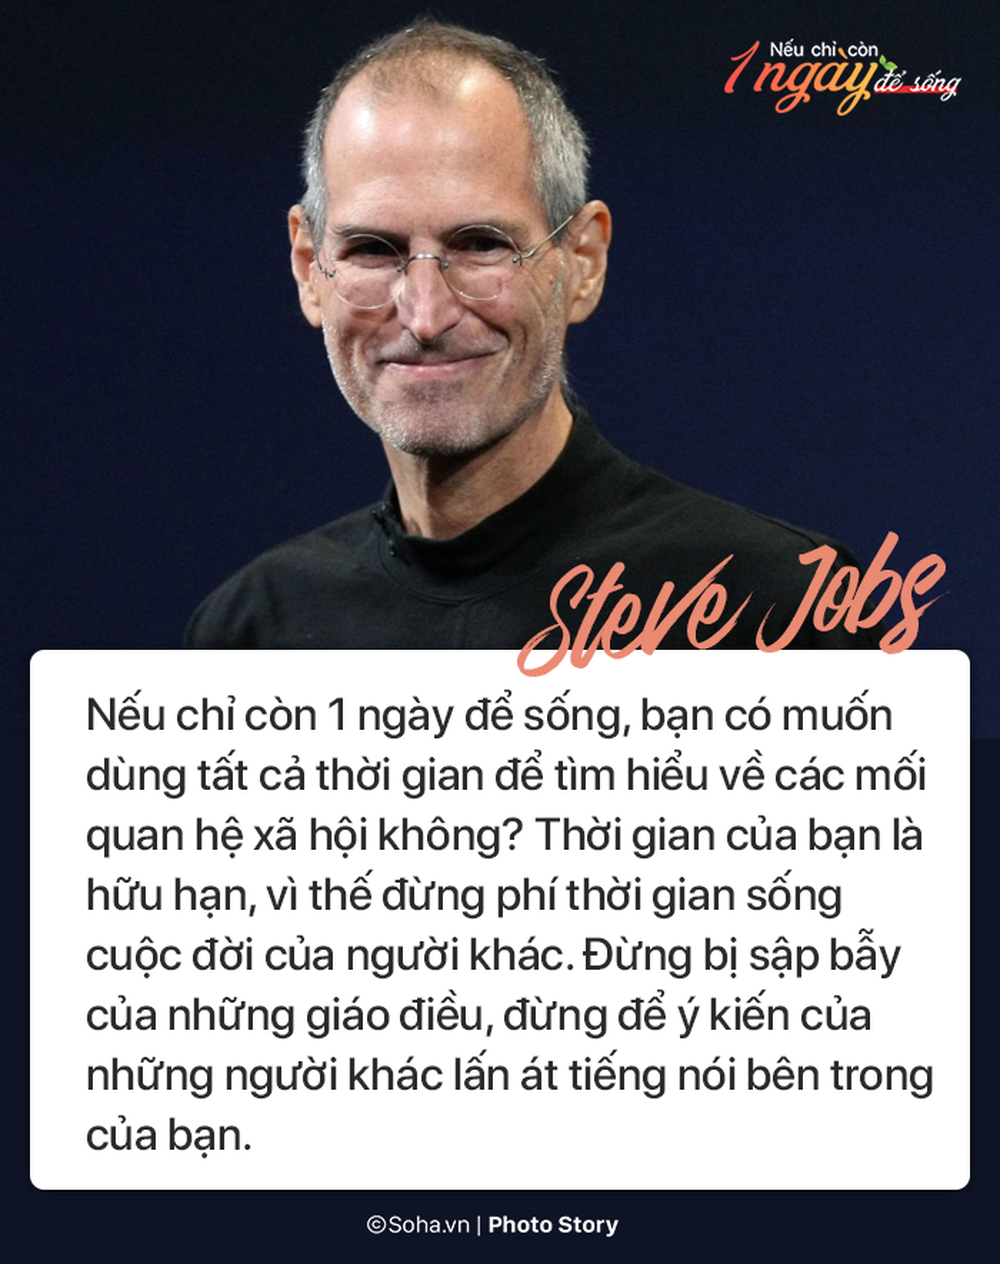 Nếu chỉ còn 1 ngày để sống, đây là điều Steve Jobs và các vĩ nhân khác khuyên bạn - Ảnh 1.